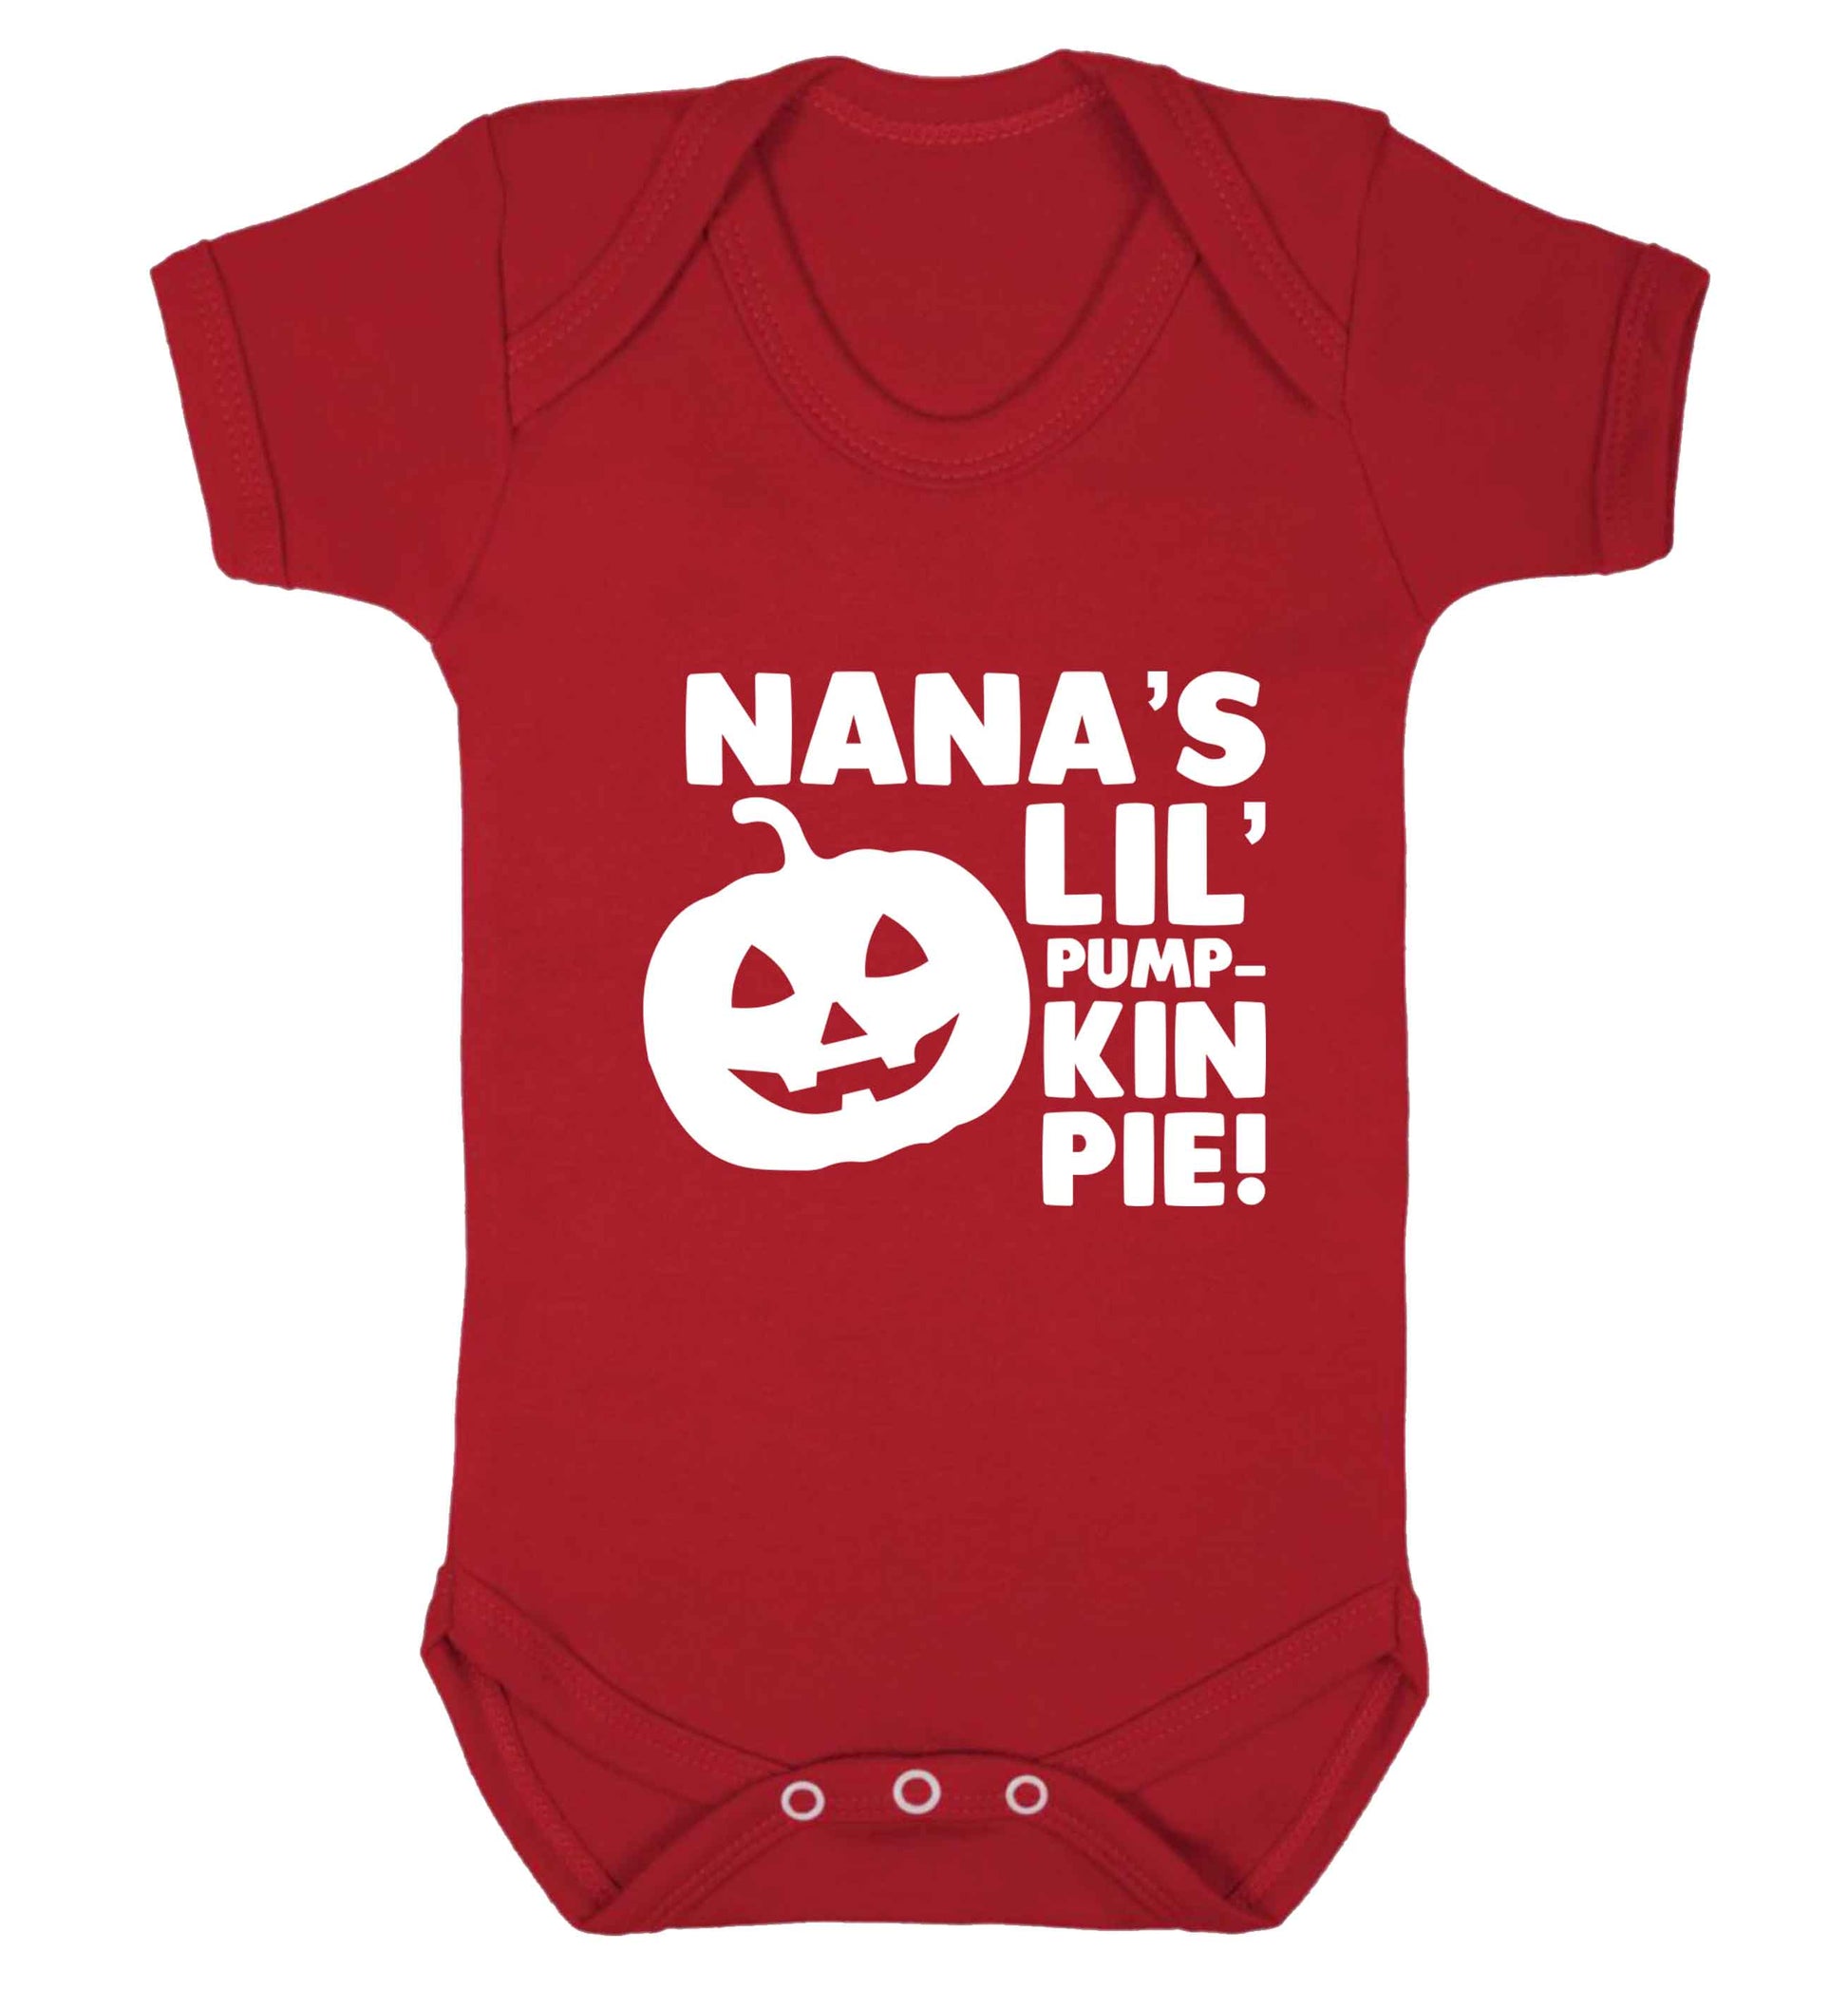 Nana's lil' pumpkin pie baby vest red 18-24 months